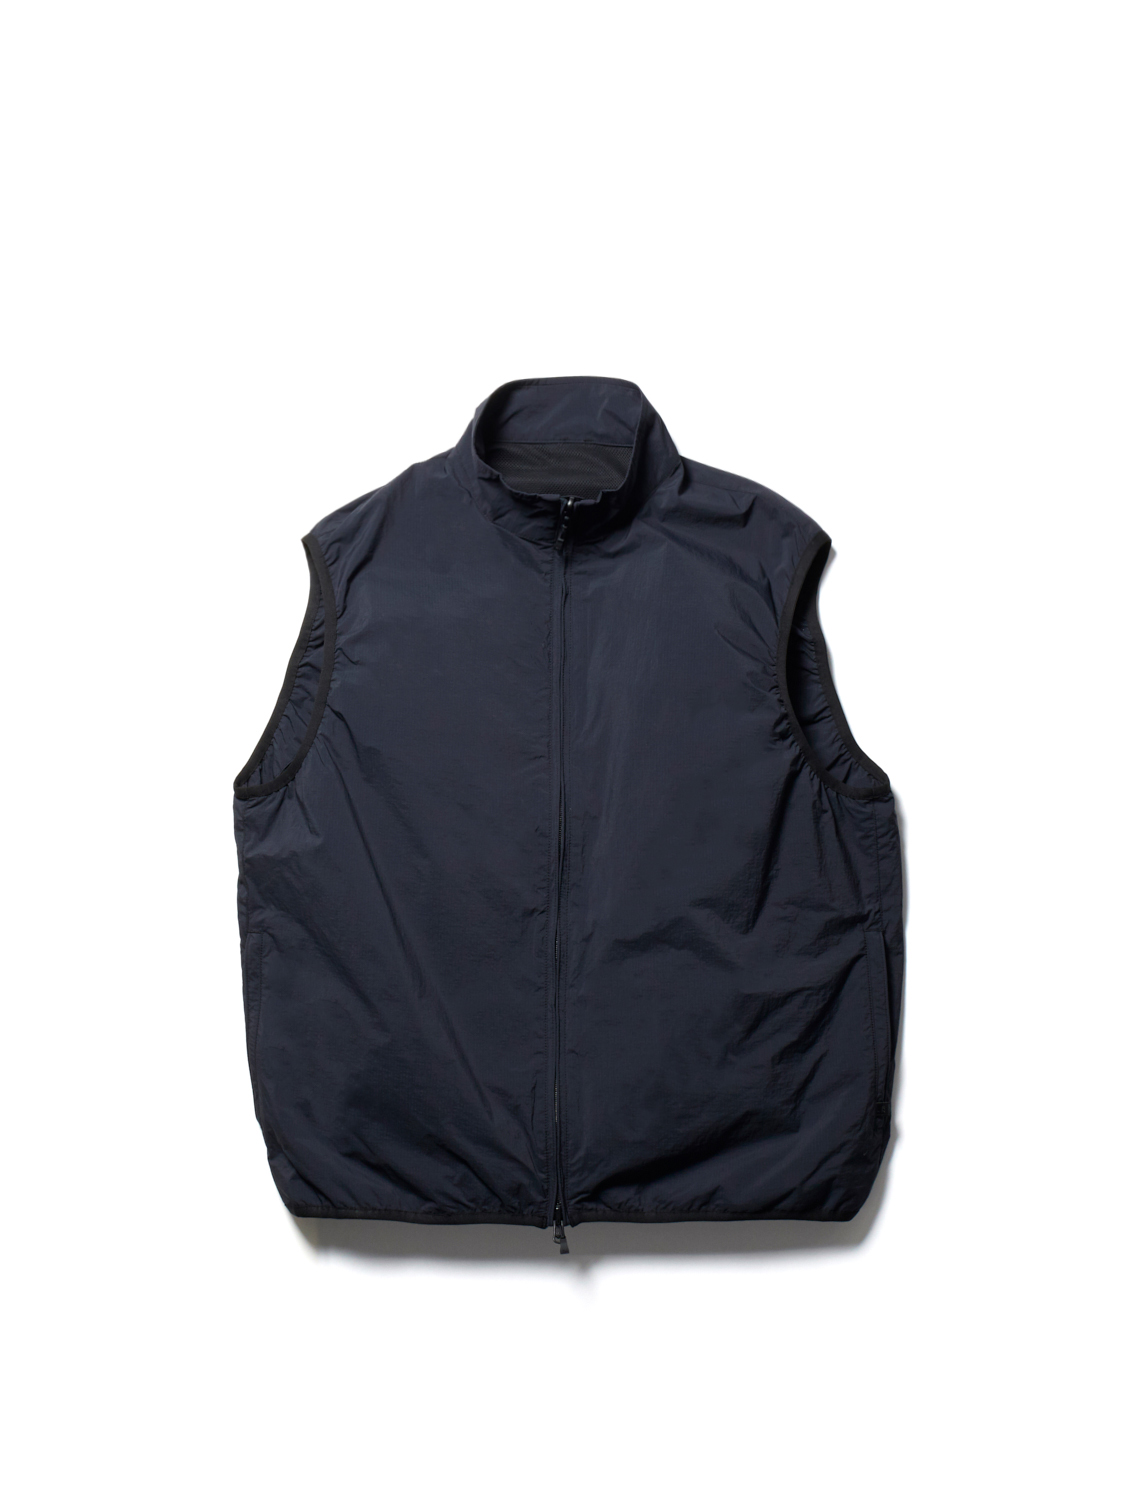 DAIWA PIER39 / Tech Mil Vest Reversible (Black)